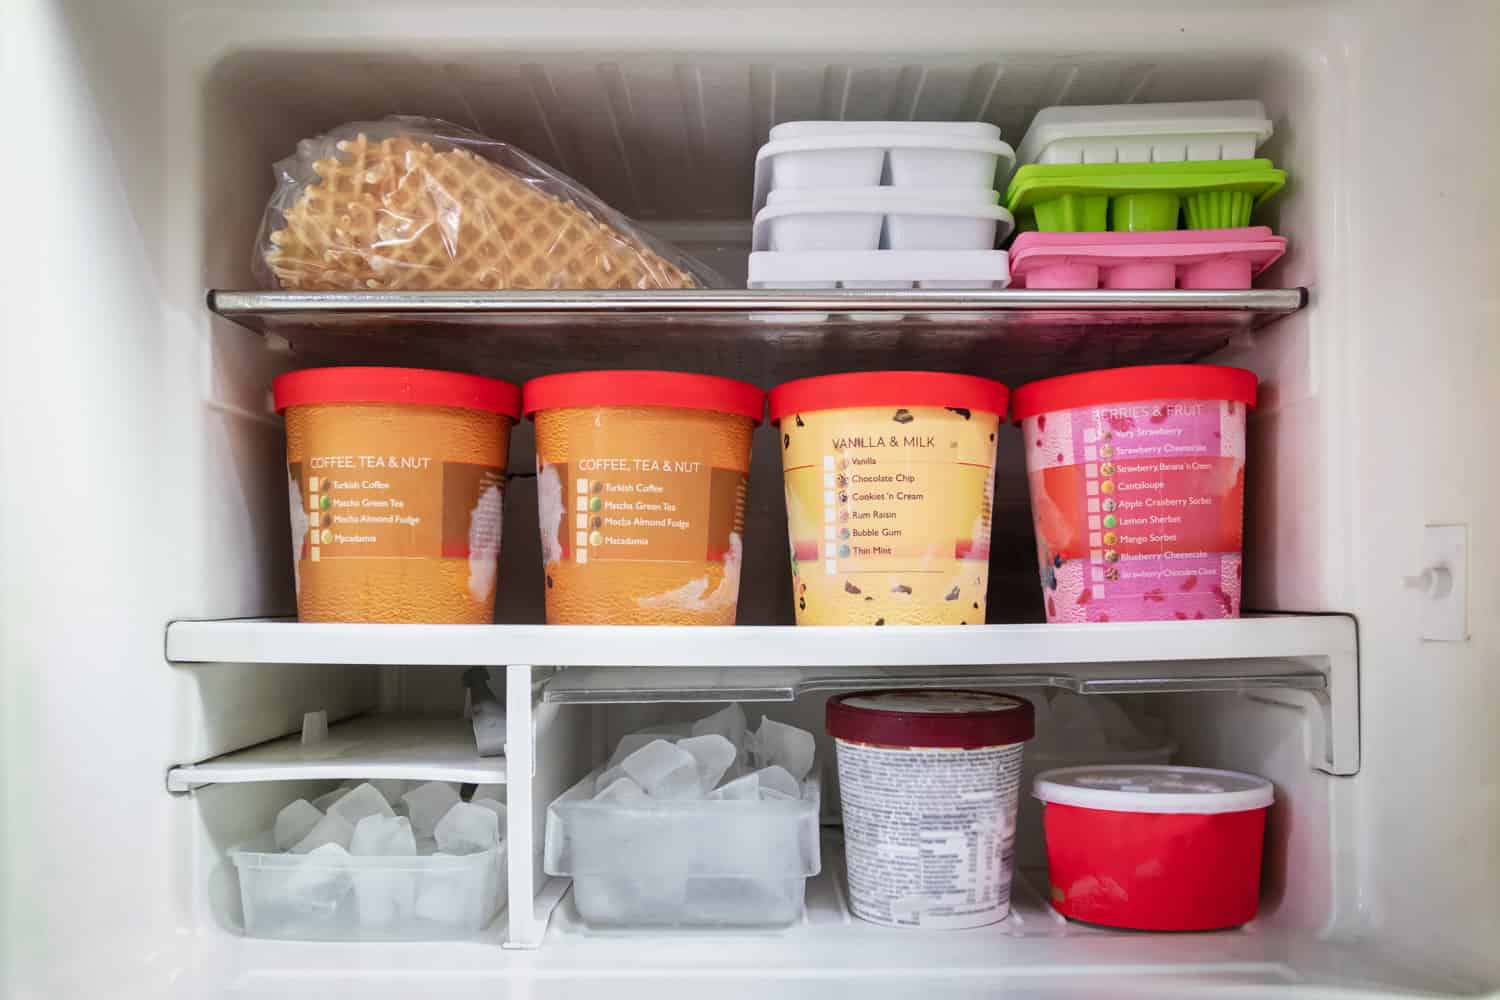 冰箱里装满了冰淇淋口味和冰块。